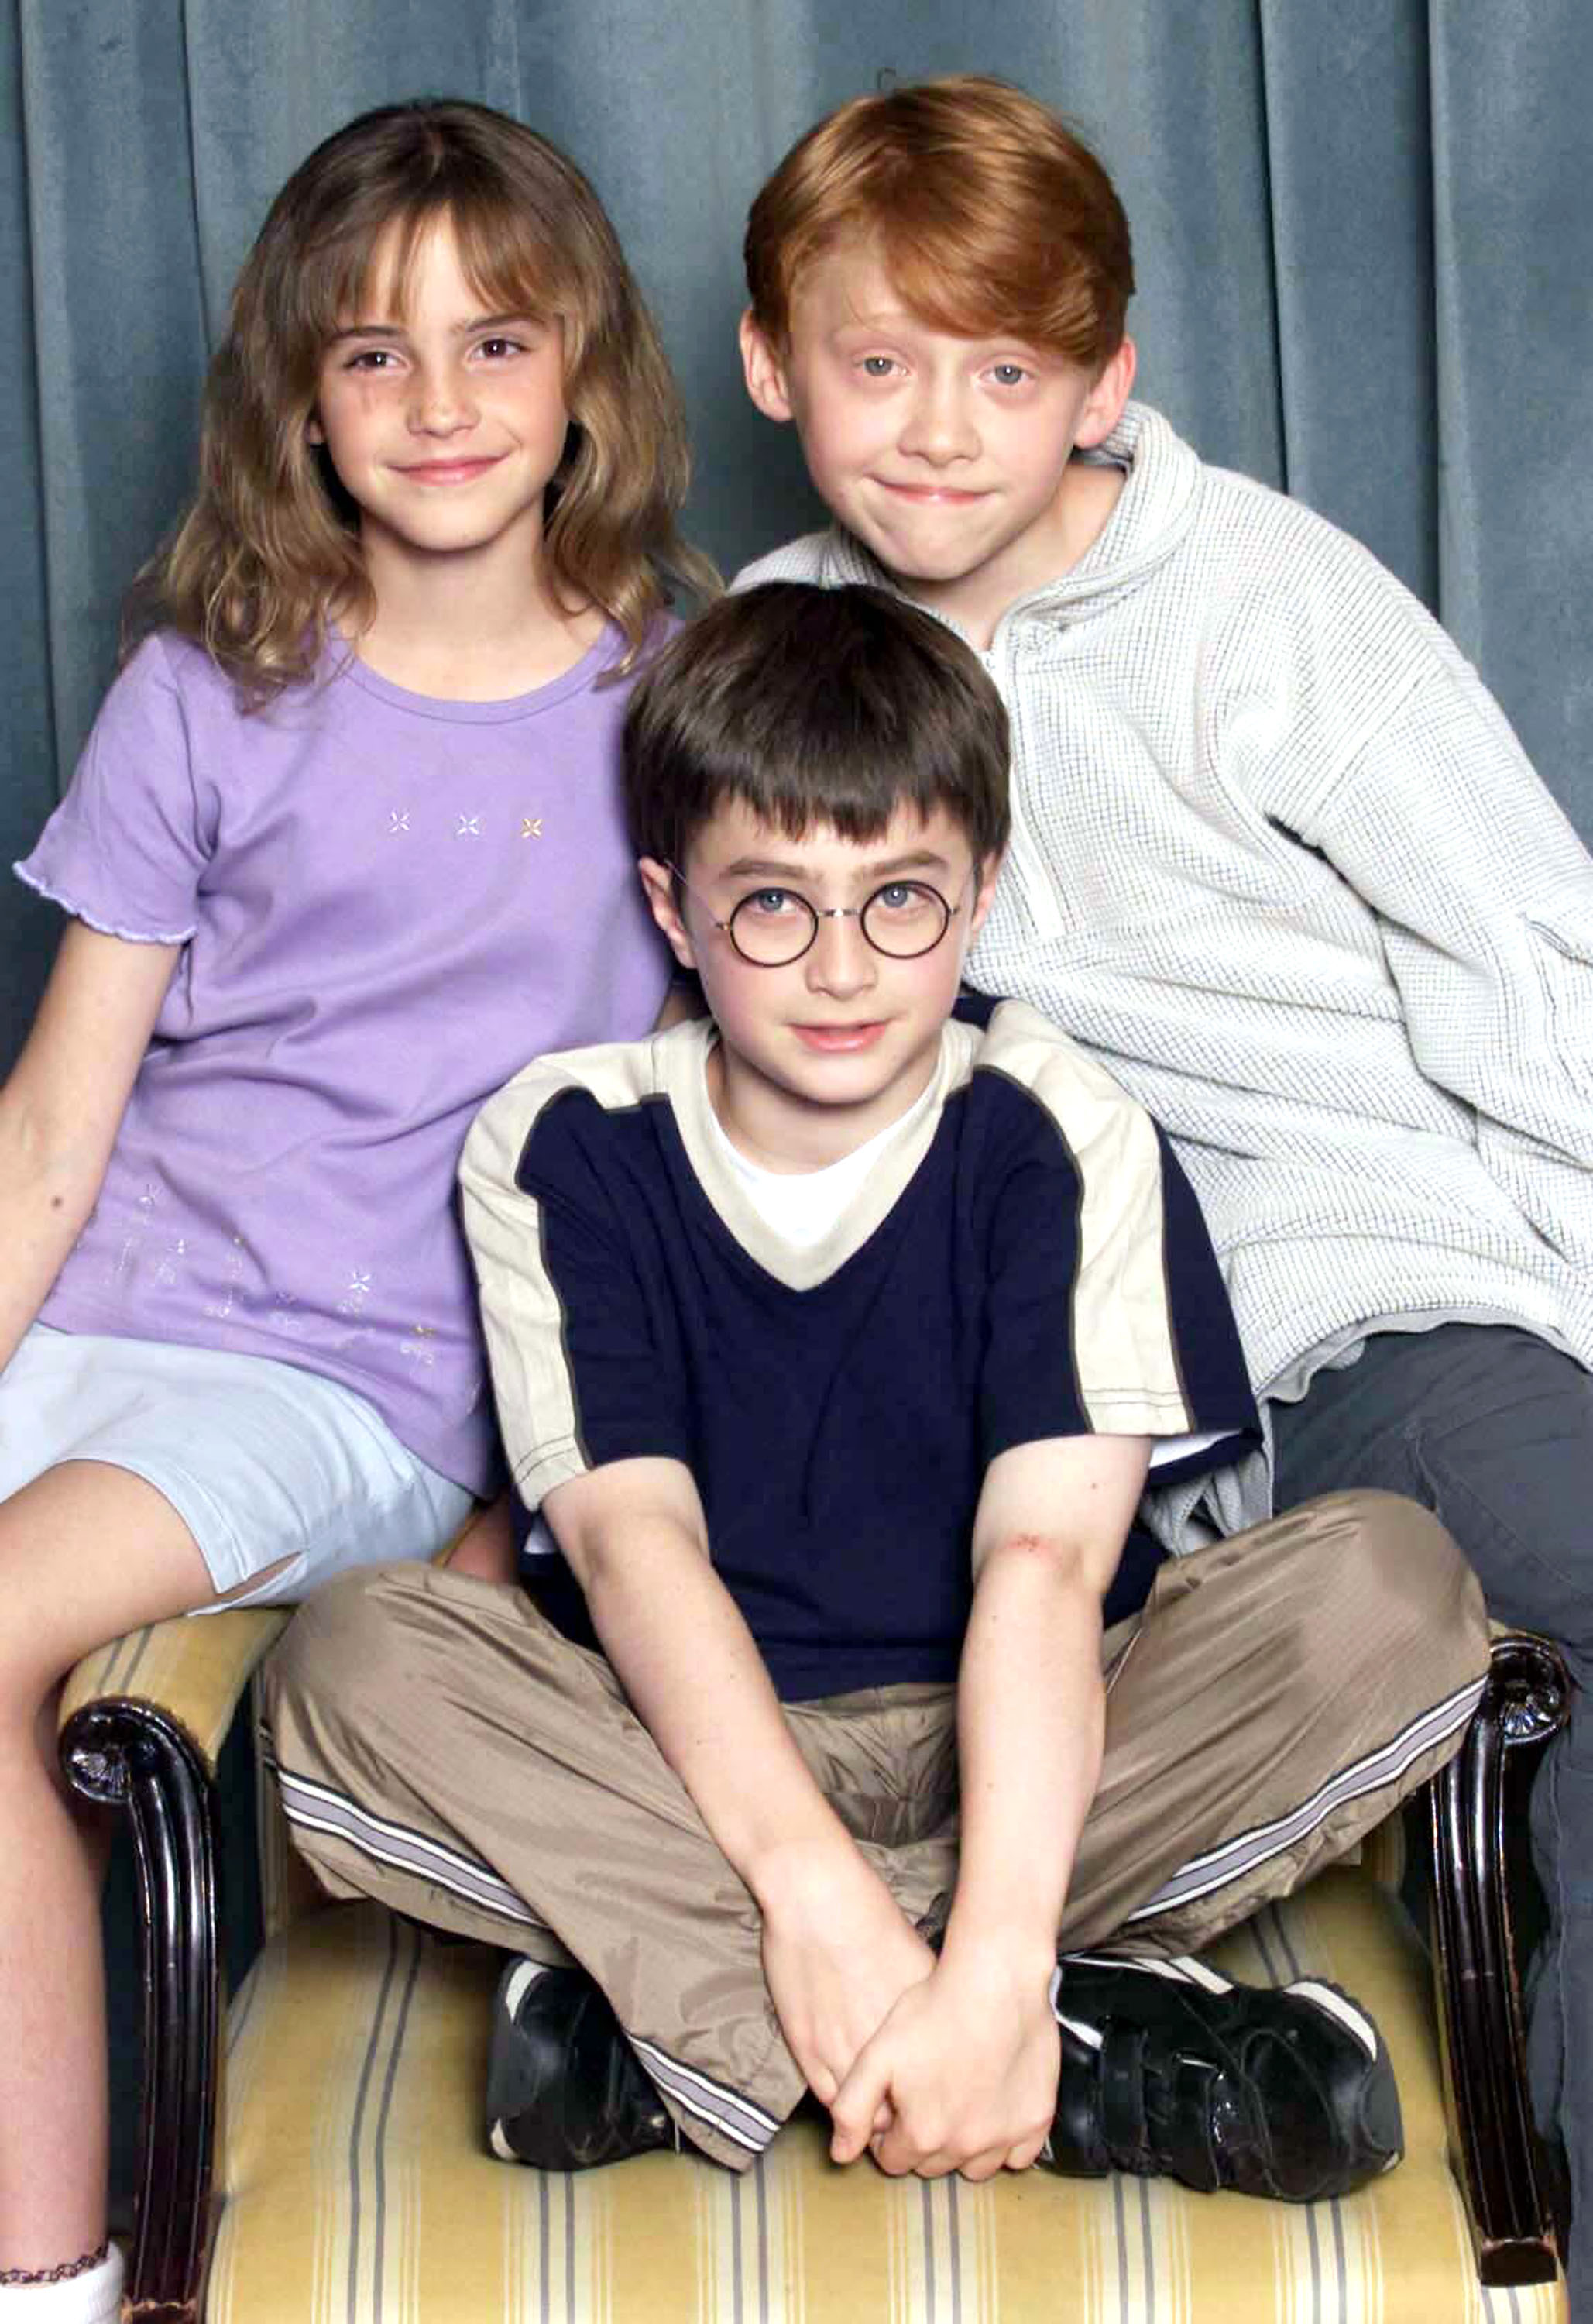 Emma Watson, Daniel Radcliffe et Rupert Grint lors d'un photocall pour "Harry Potter" à Londres, Angleterre, le 23 août 2000 | Source : Getty Images